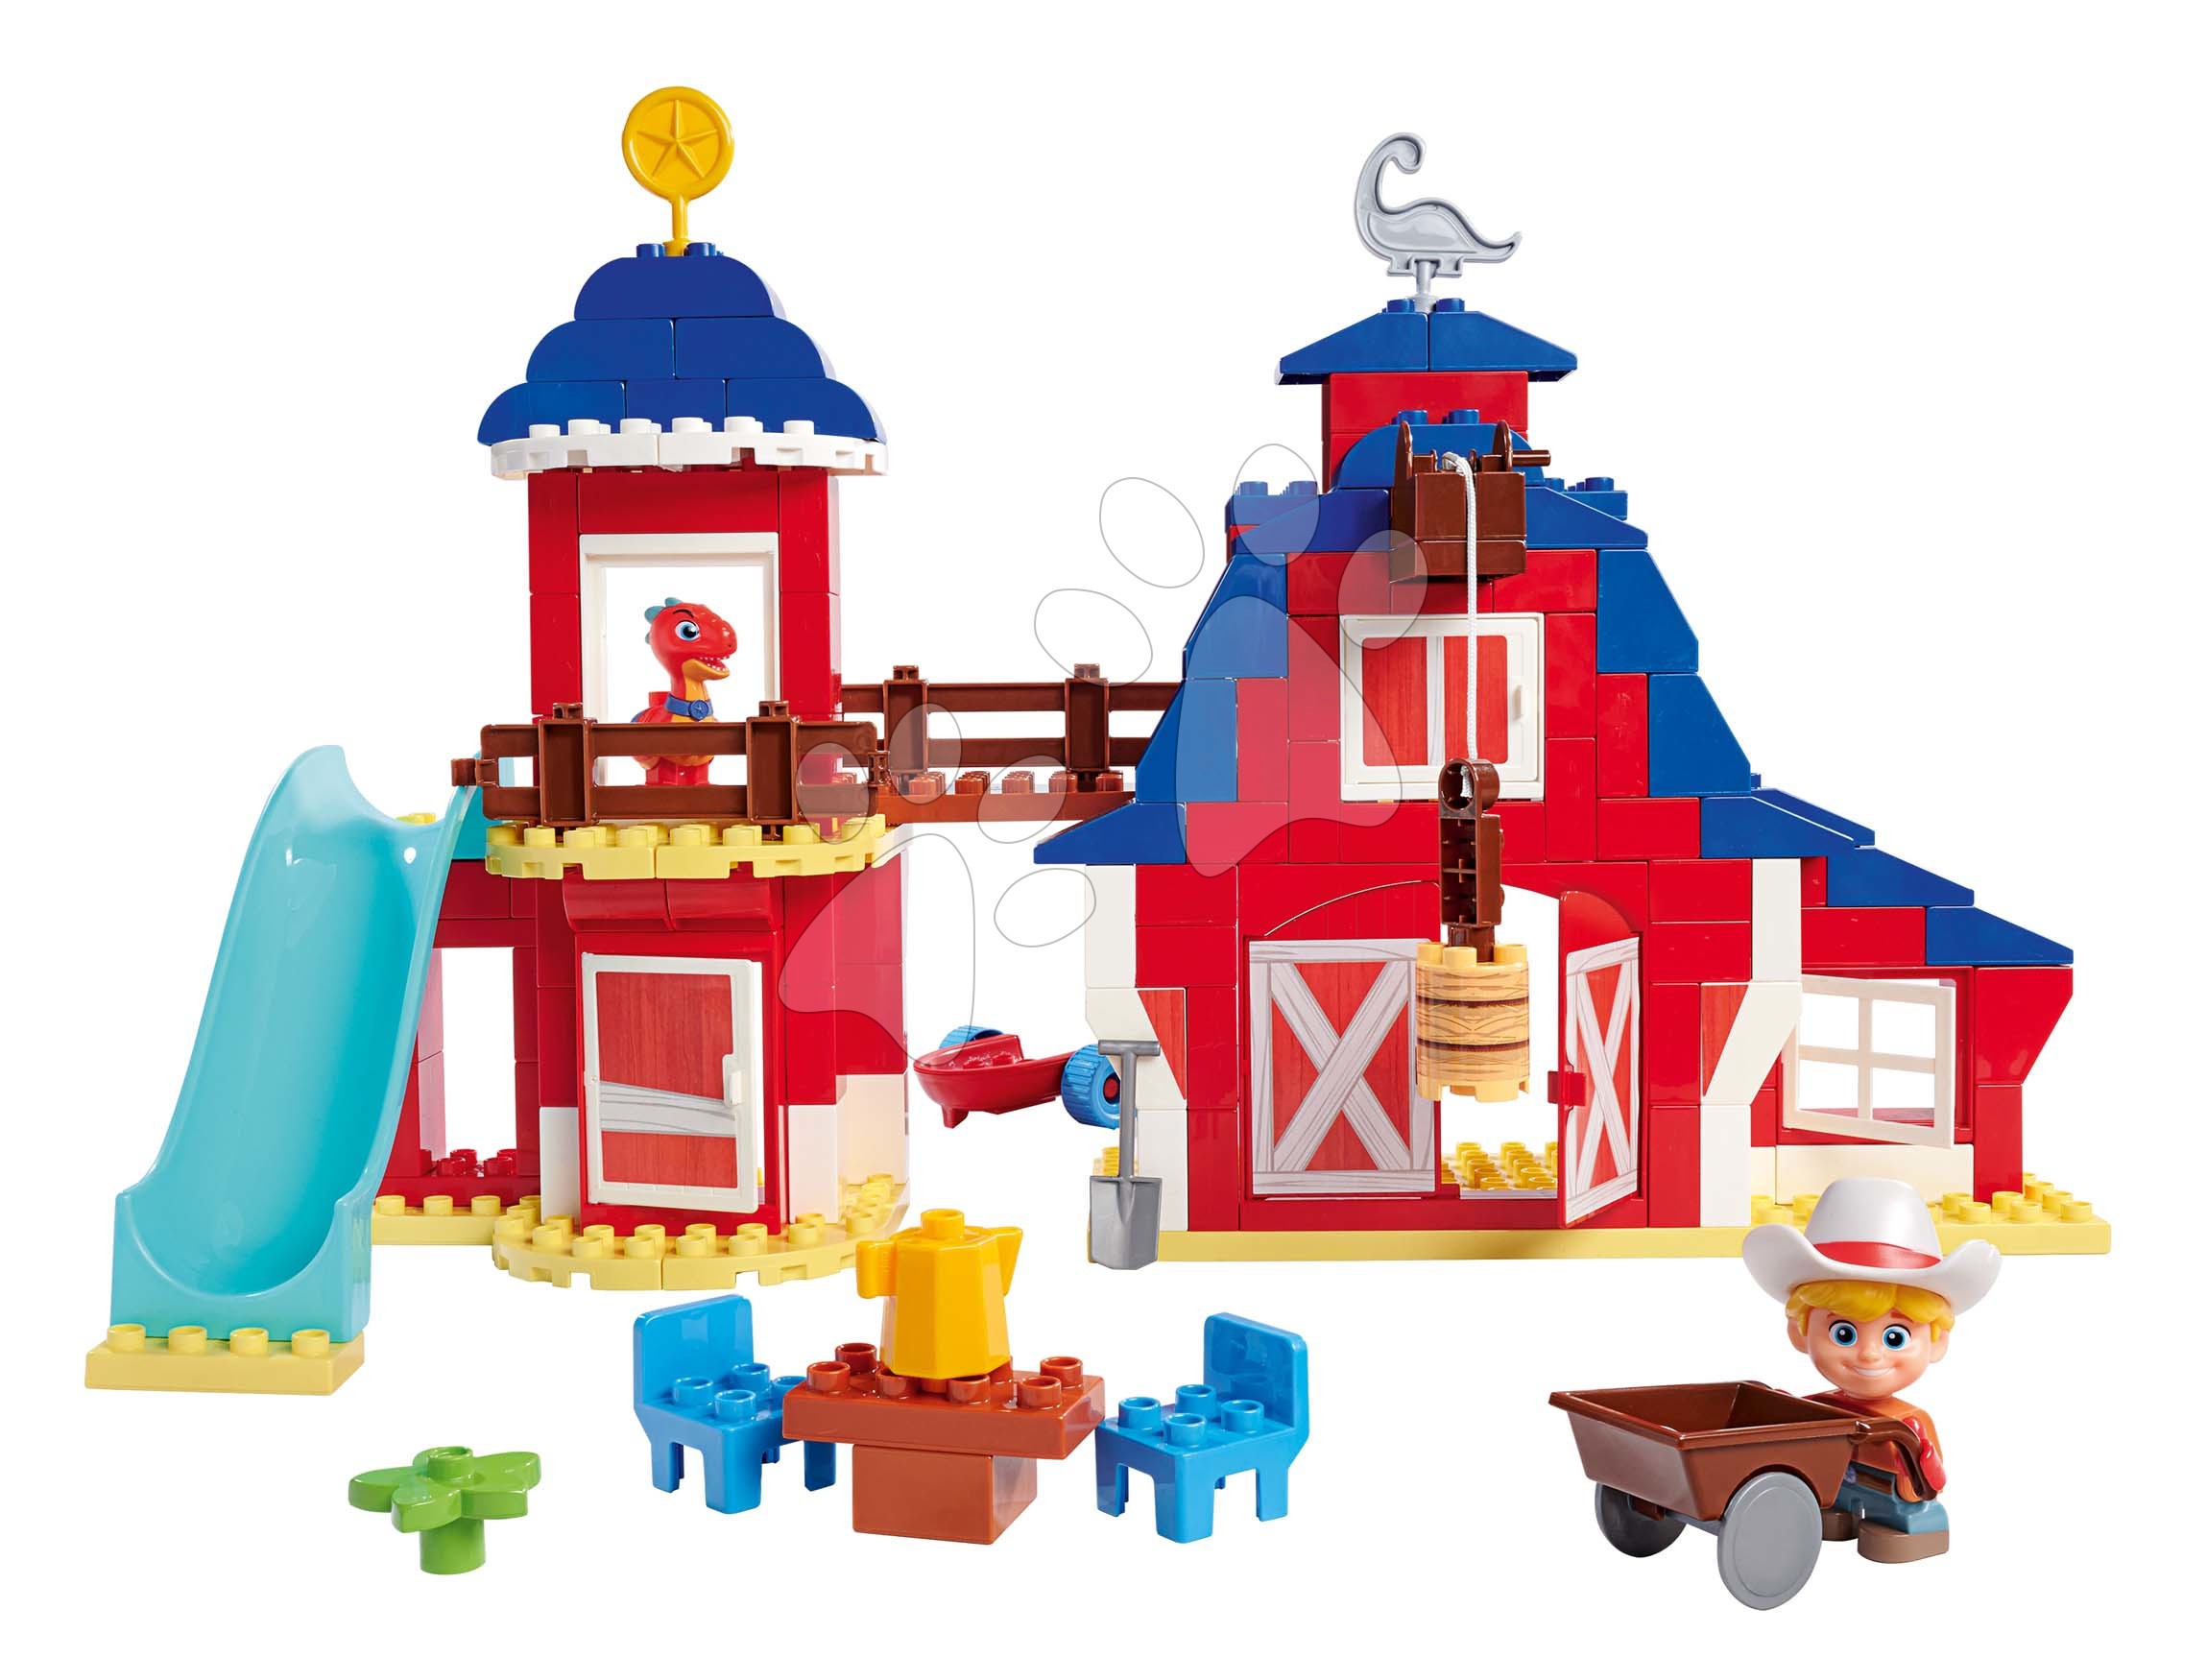 Építőjátékok BIG-Bloxx mint lego - Építőjáték Dino Ranch Clubhouse PlayBig Bloxx BIG klubház csúszdával és 2 figurával 168 darabos 1,5-5 éves korosztálynak